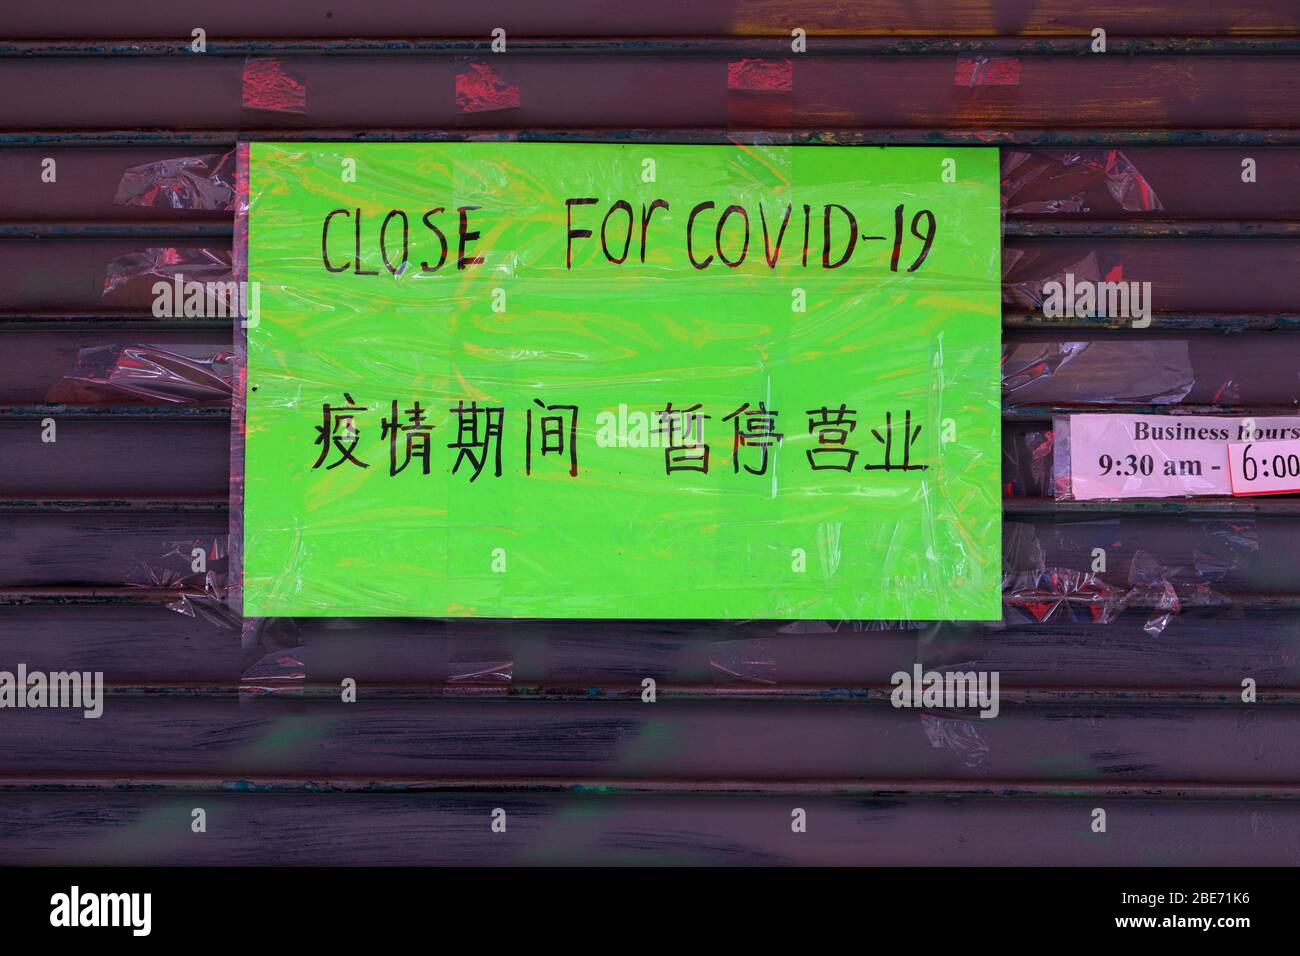 Ein Schild in Englisch und vereinfachtem Chinesisch auf einem geschlossenen Geschäft in Manhattan Chinatown wegen COVID-19-Pandemie geschlossen Stockfoto